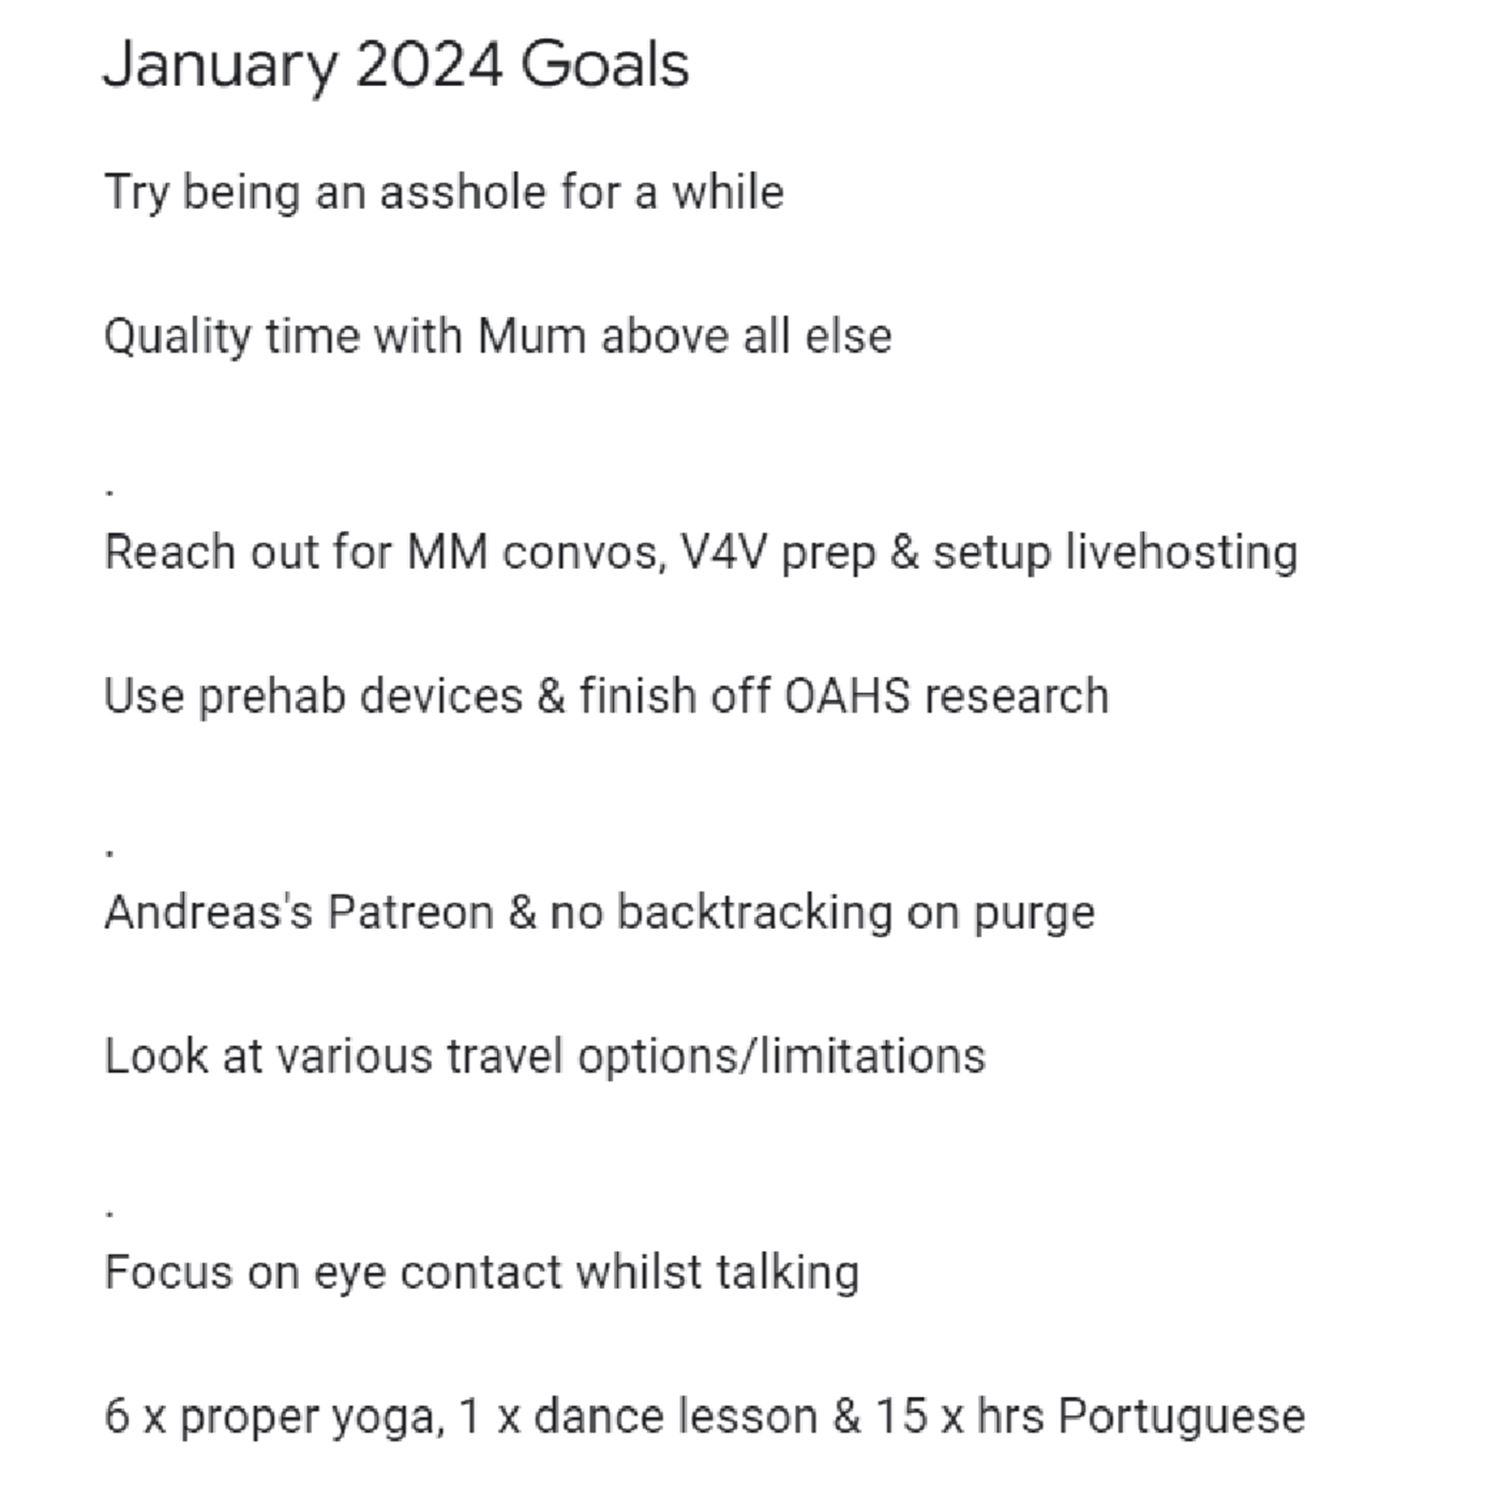 Kyrin's January 2024 Goals